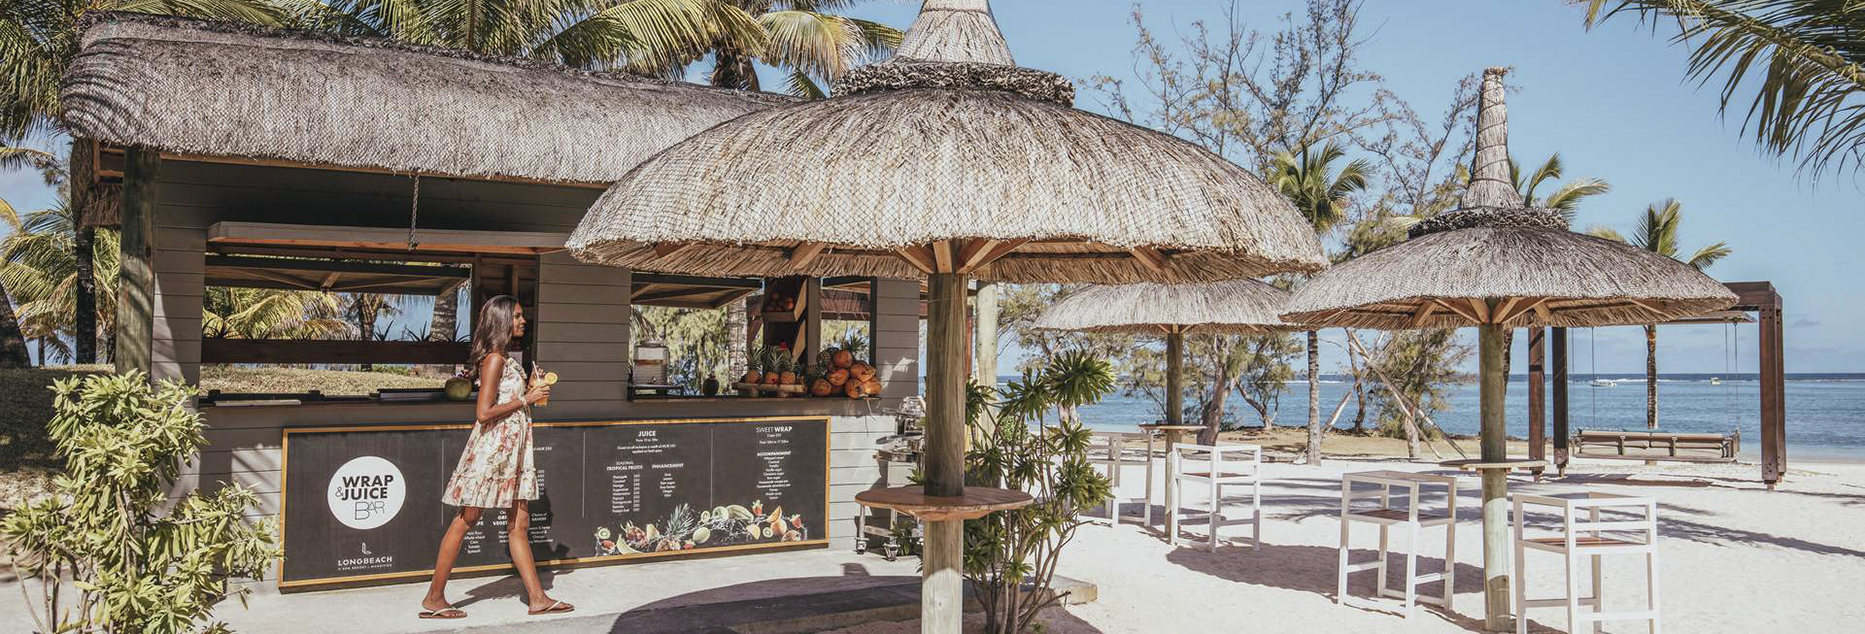 Las mejores experiencias gastronómicas en hoteles de Mauricio